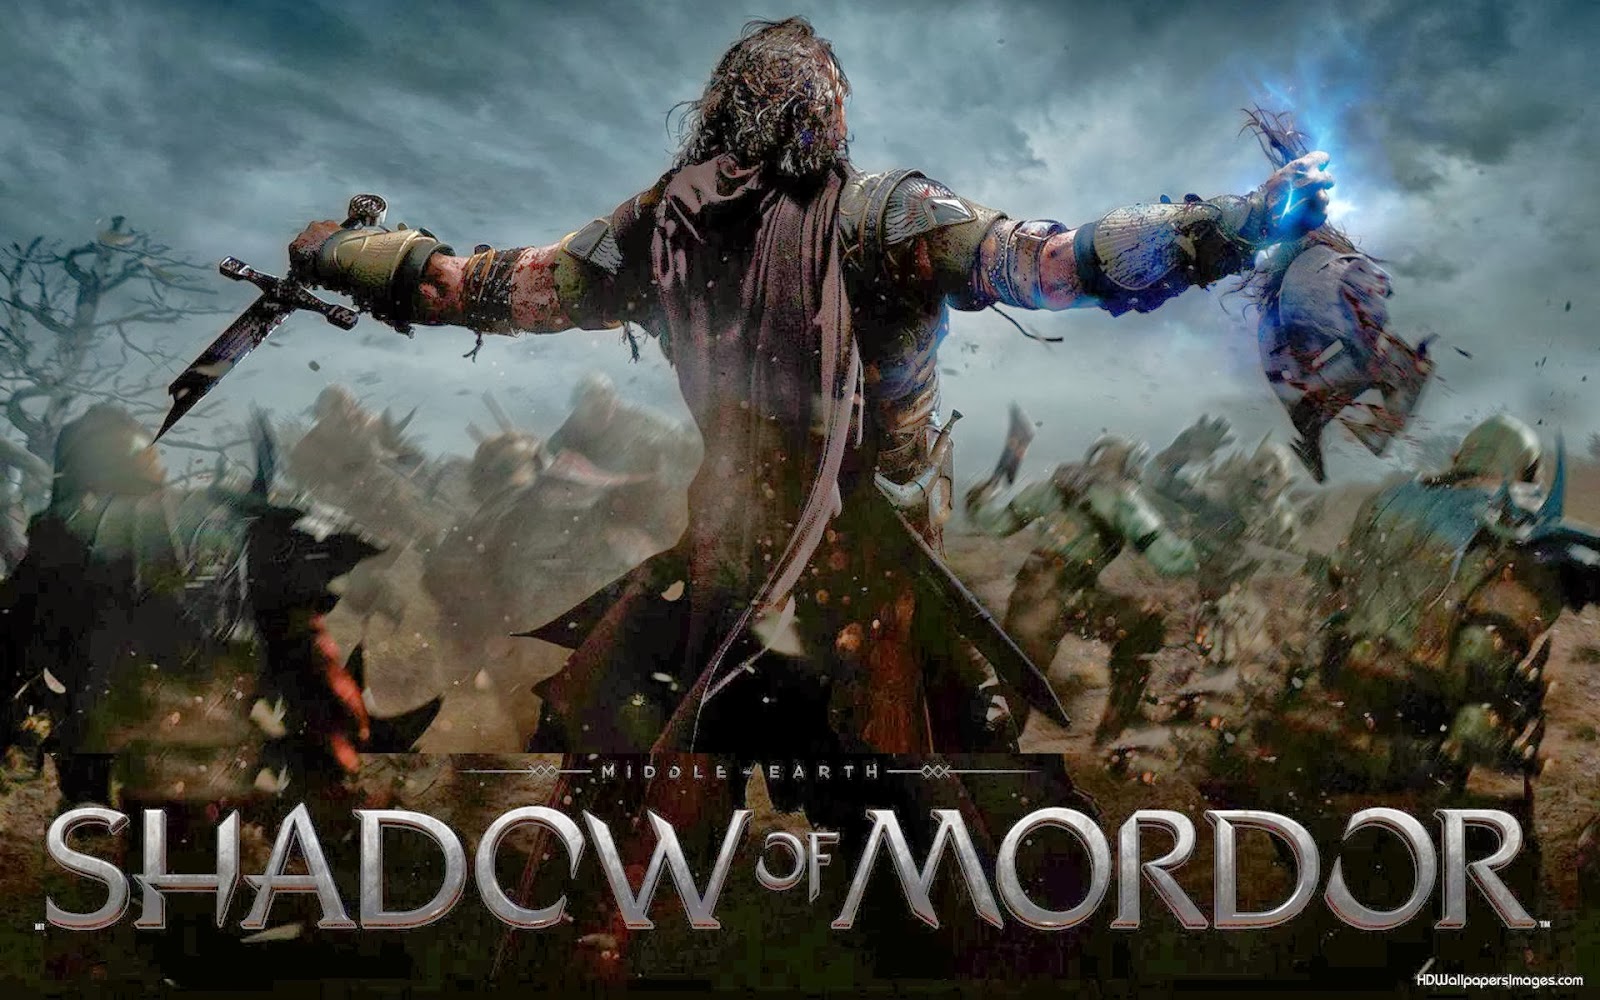 Sombras de Mordor e Sombras da Guerra: dois jogos que trazem o